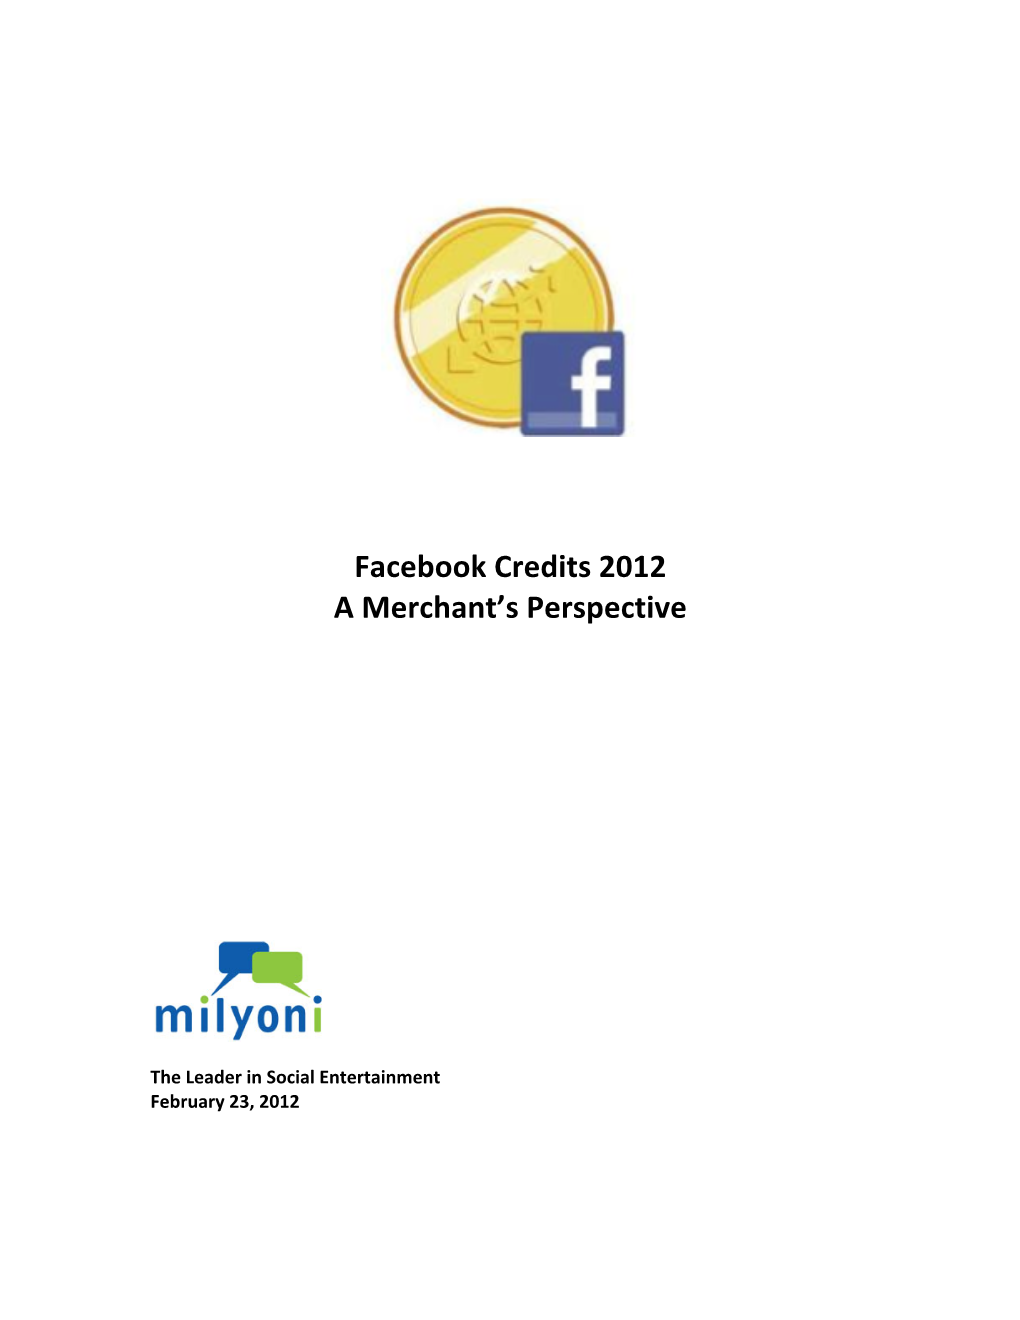 Facebook Credits 2012 a Merchant's Perspective